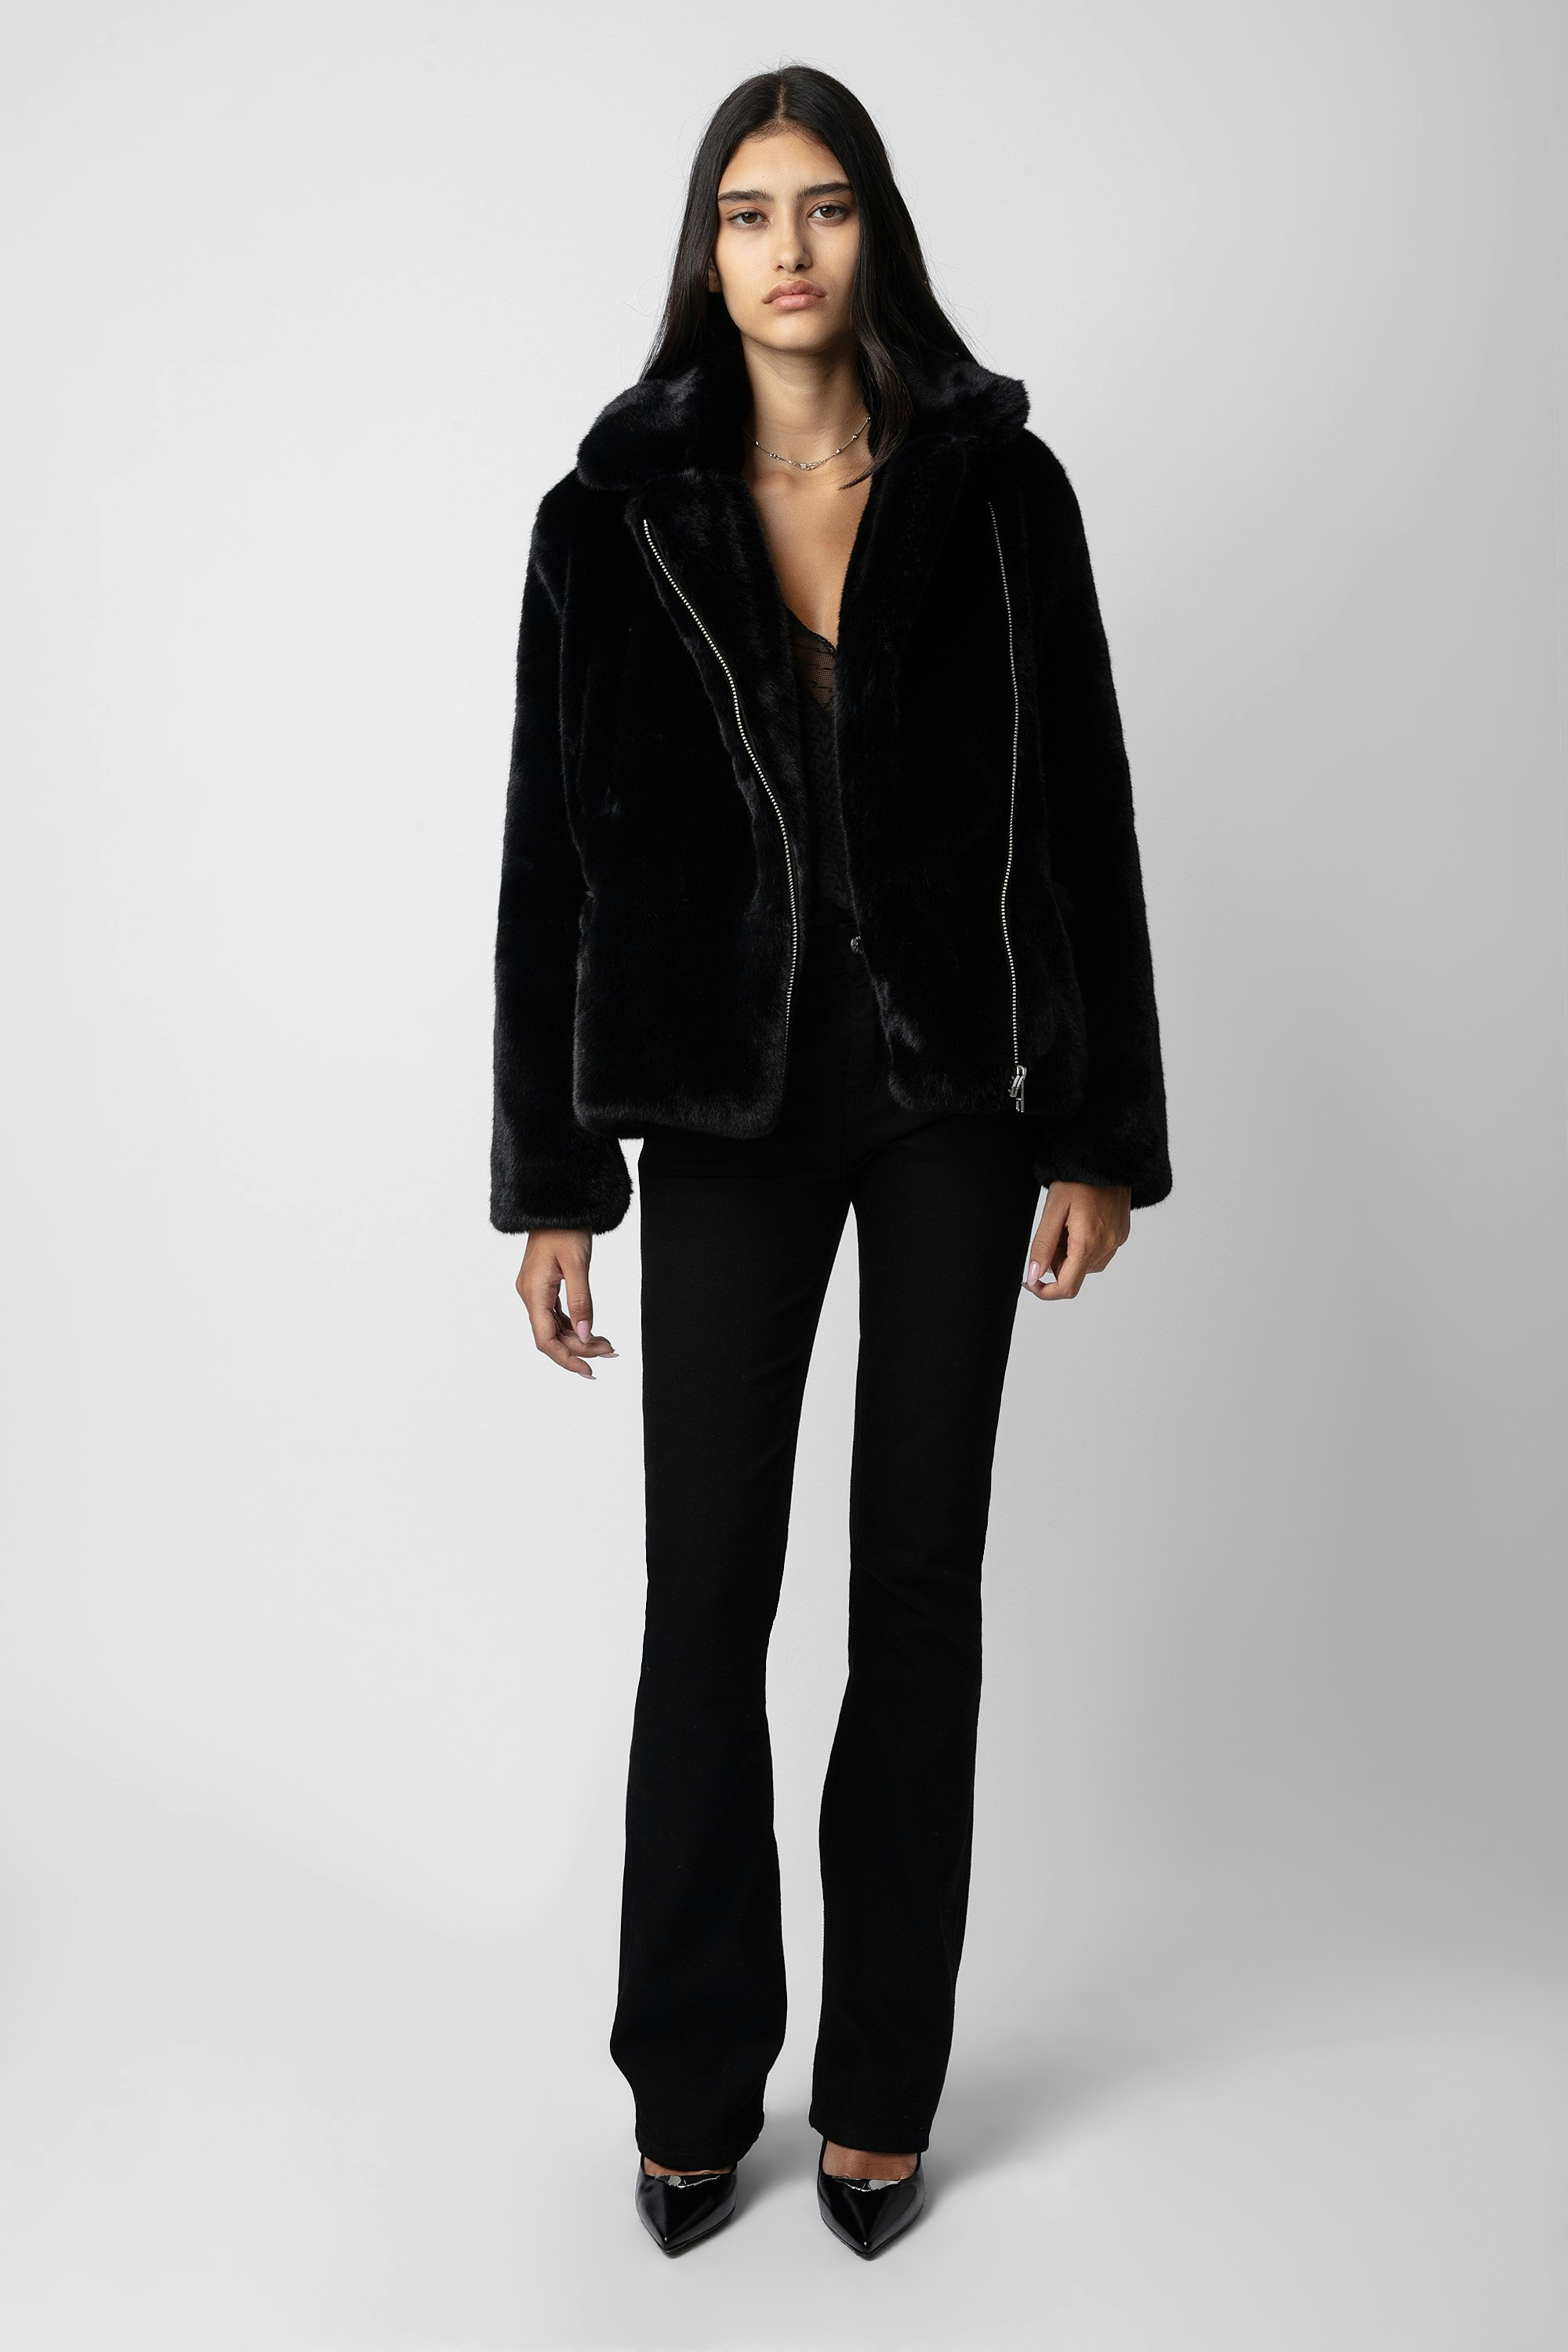 Cappotto Freeze - Cappotto nero corto da donna in finta pelliccia.